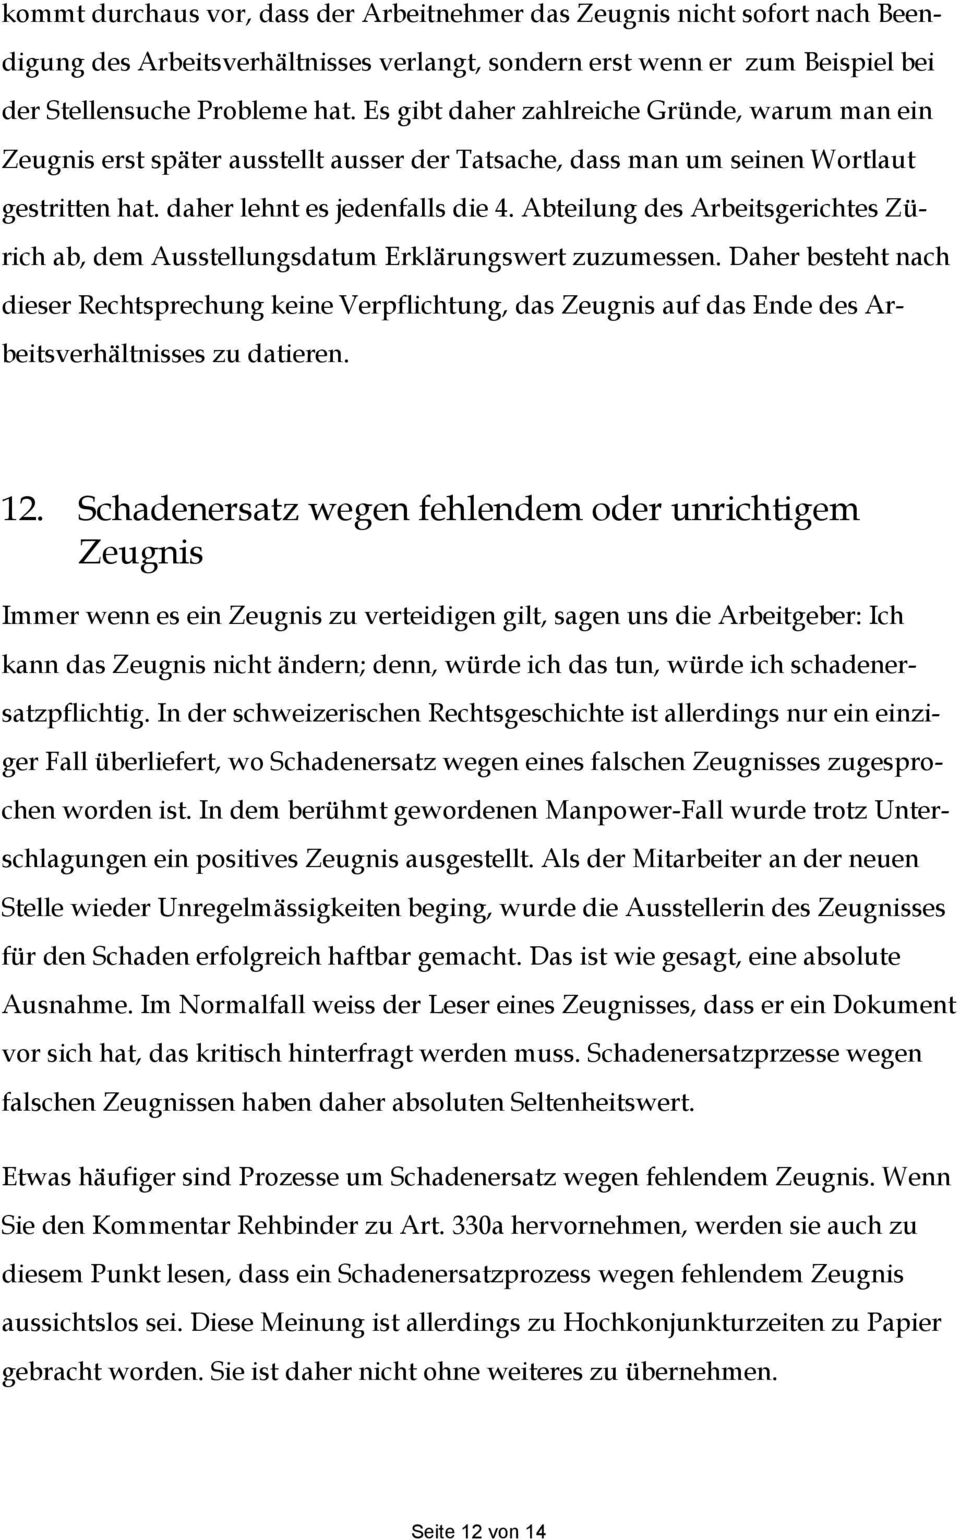 Abteilung des Arbeitsgerichtes Zürich ab, dem Ausstellungsdatum Erklärungswert zuzumessen.